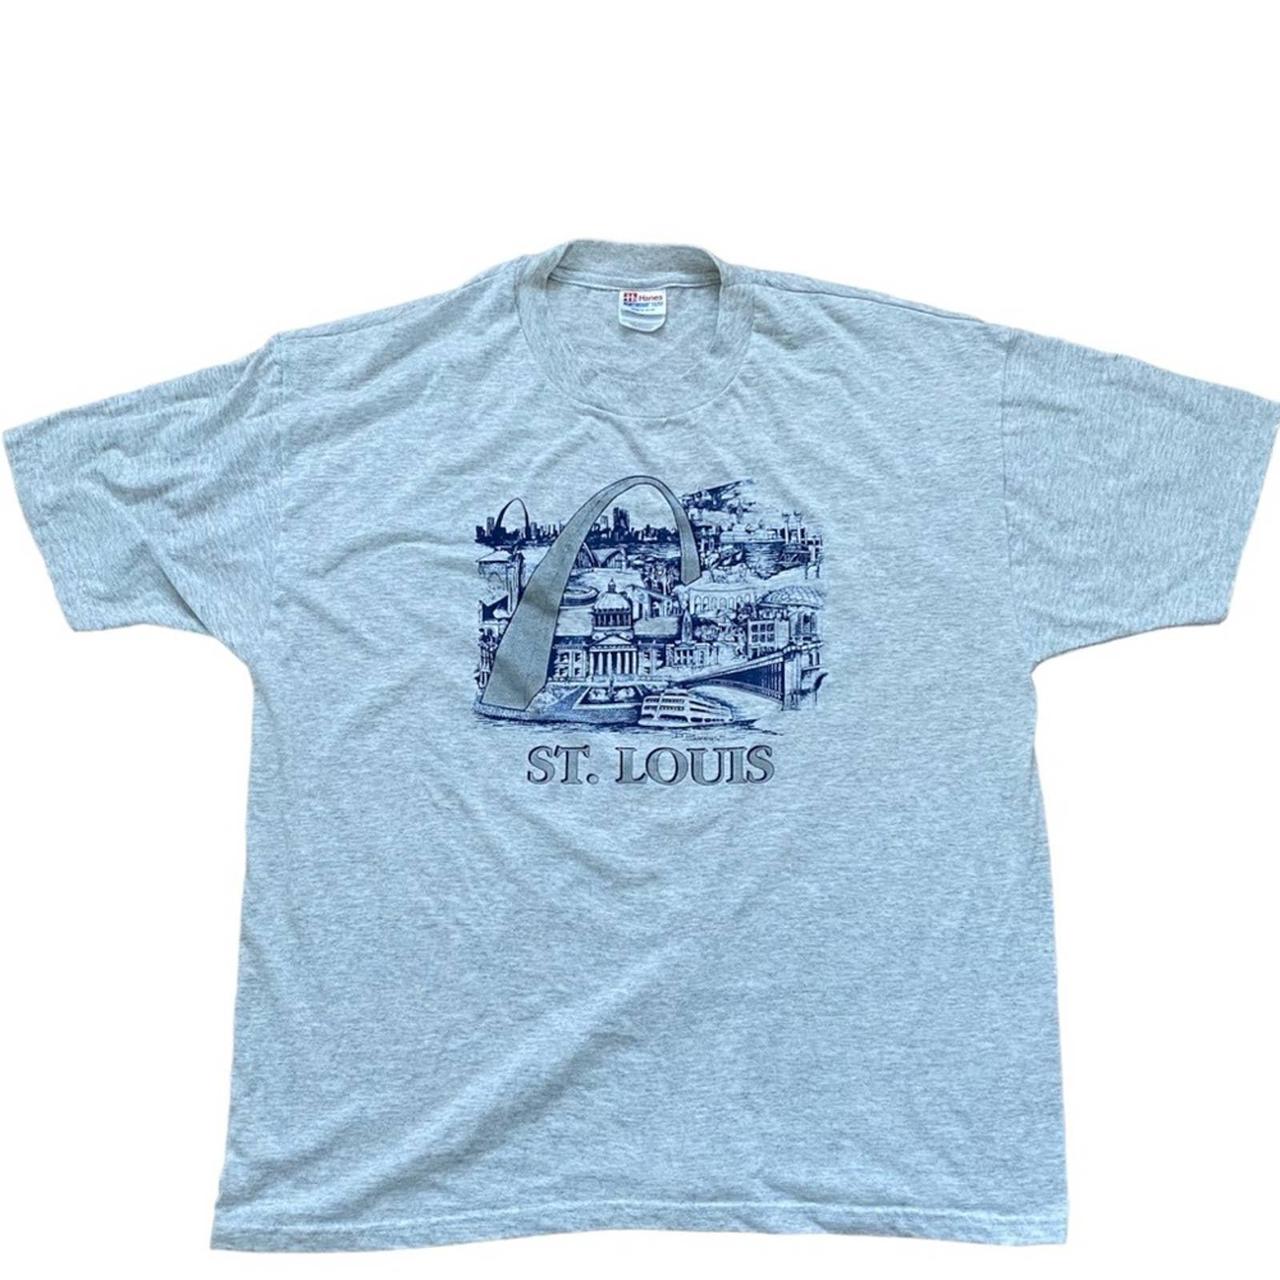 Vintage St. Louis Missouri Color: gray T-shirt - Depop